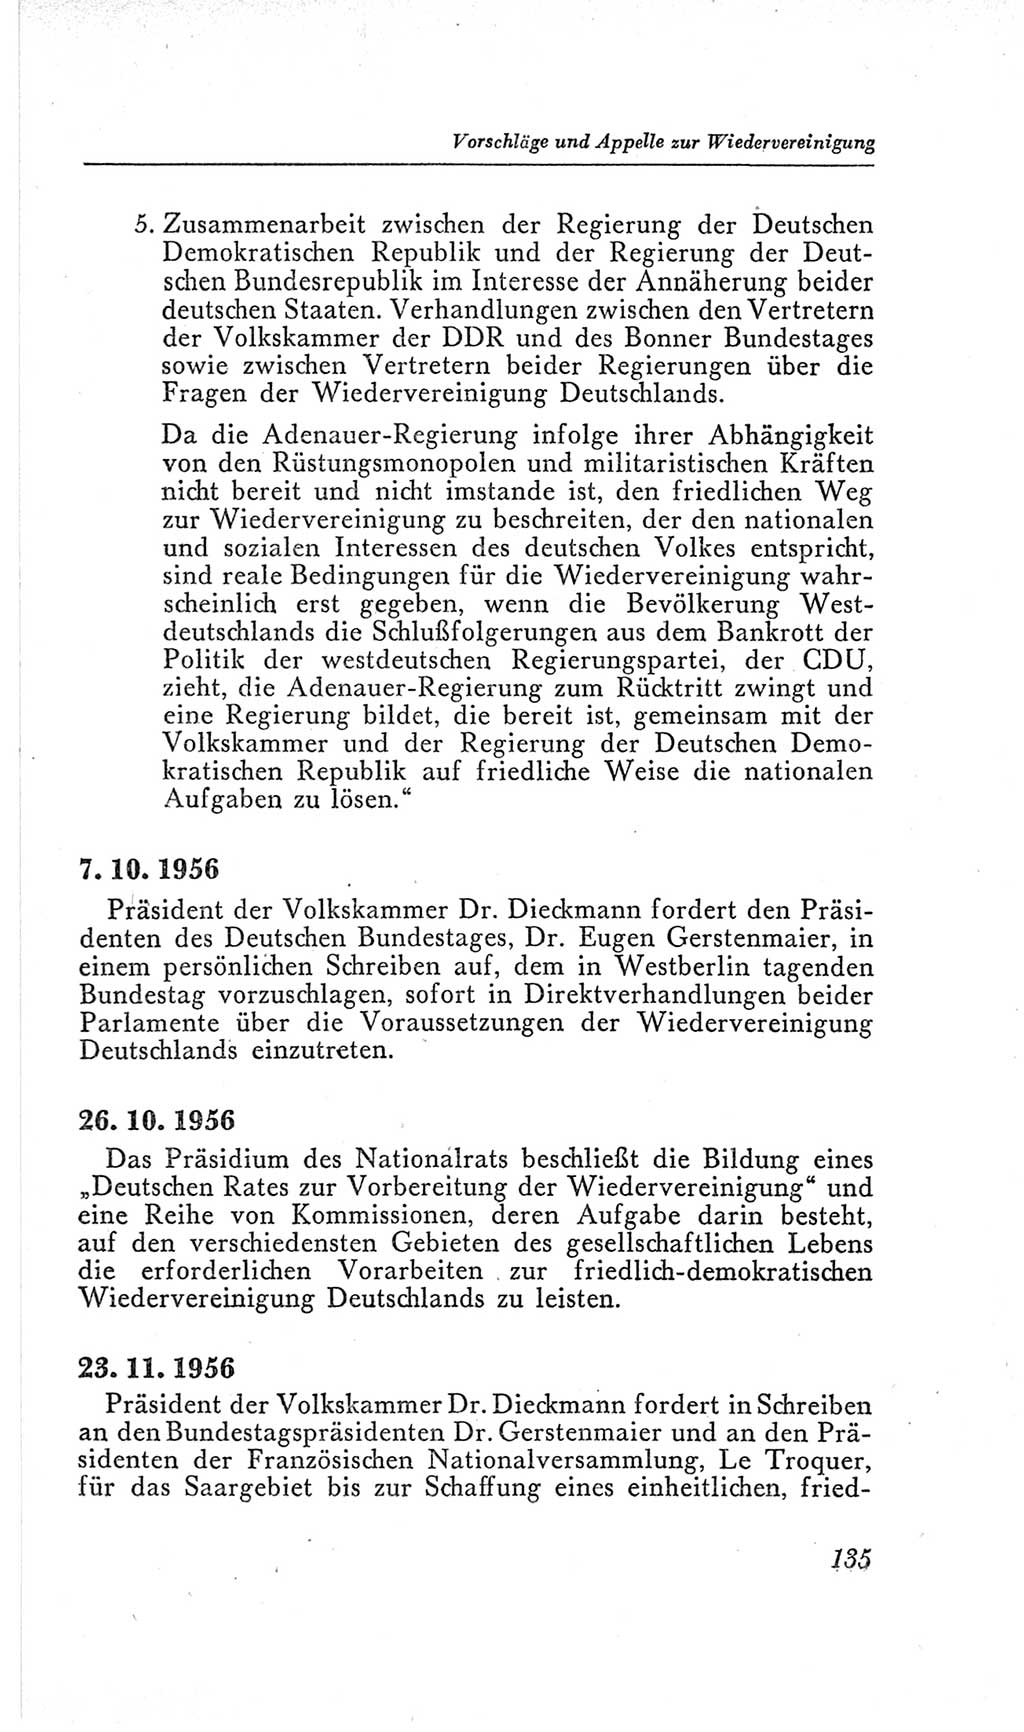 Handbuch der Volkskammer (VK) der Deutschen Demokratischen Republik (DDR), 2. Wahlperiode 1954-1958, Seite 135 (Hdb. VK. DDR, 2. WP. 1954-1958, S. 135)